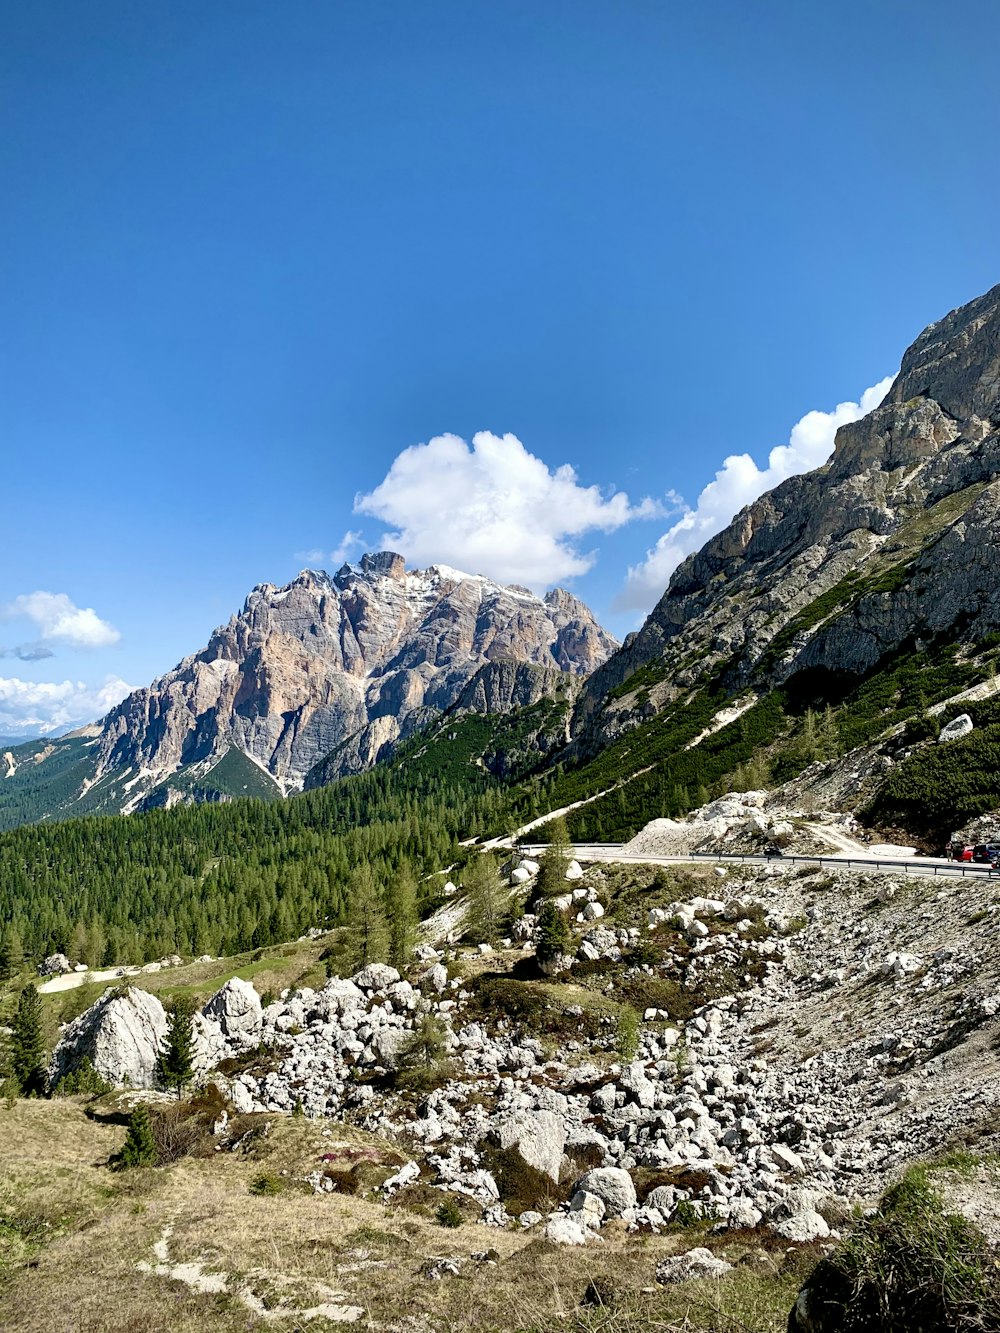 una vista panoramica di una catena montuosa con alberi e rocce